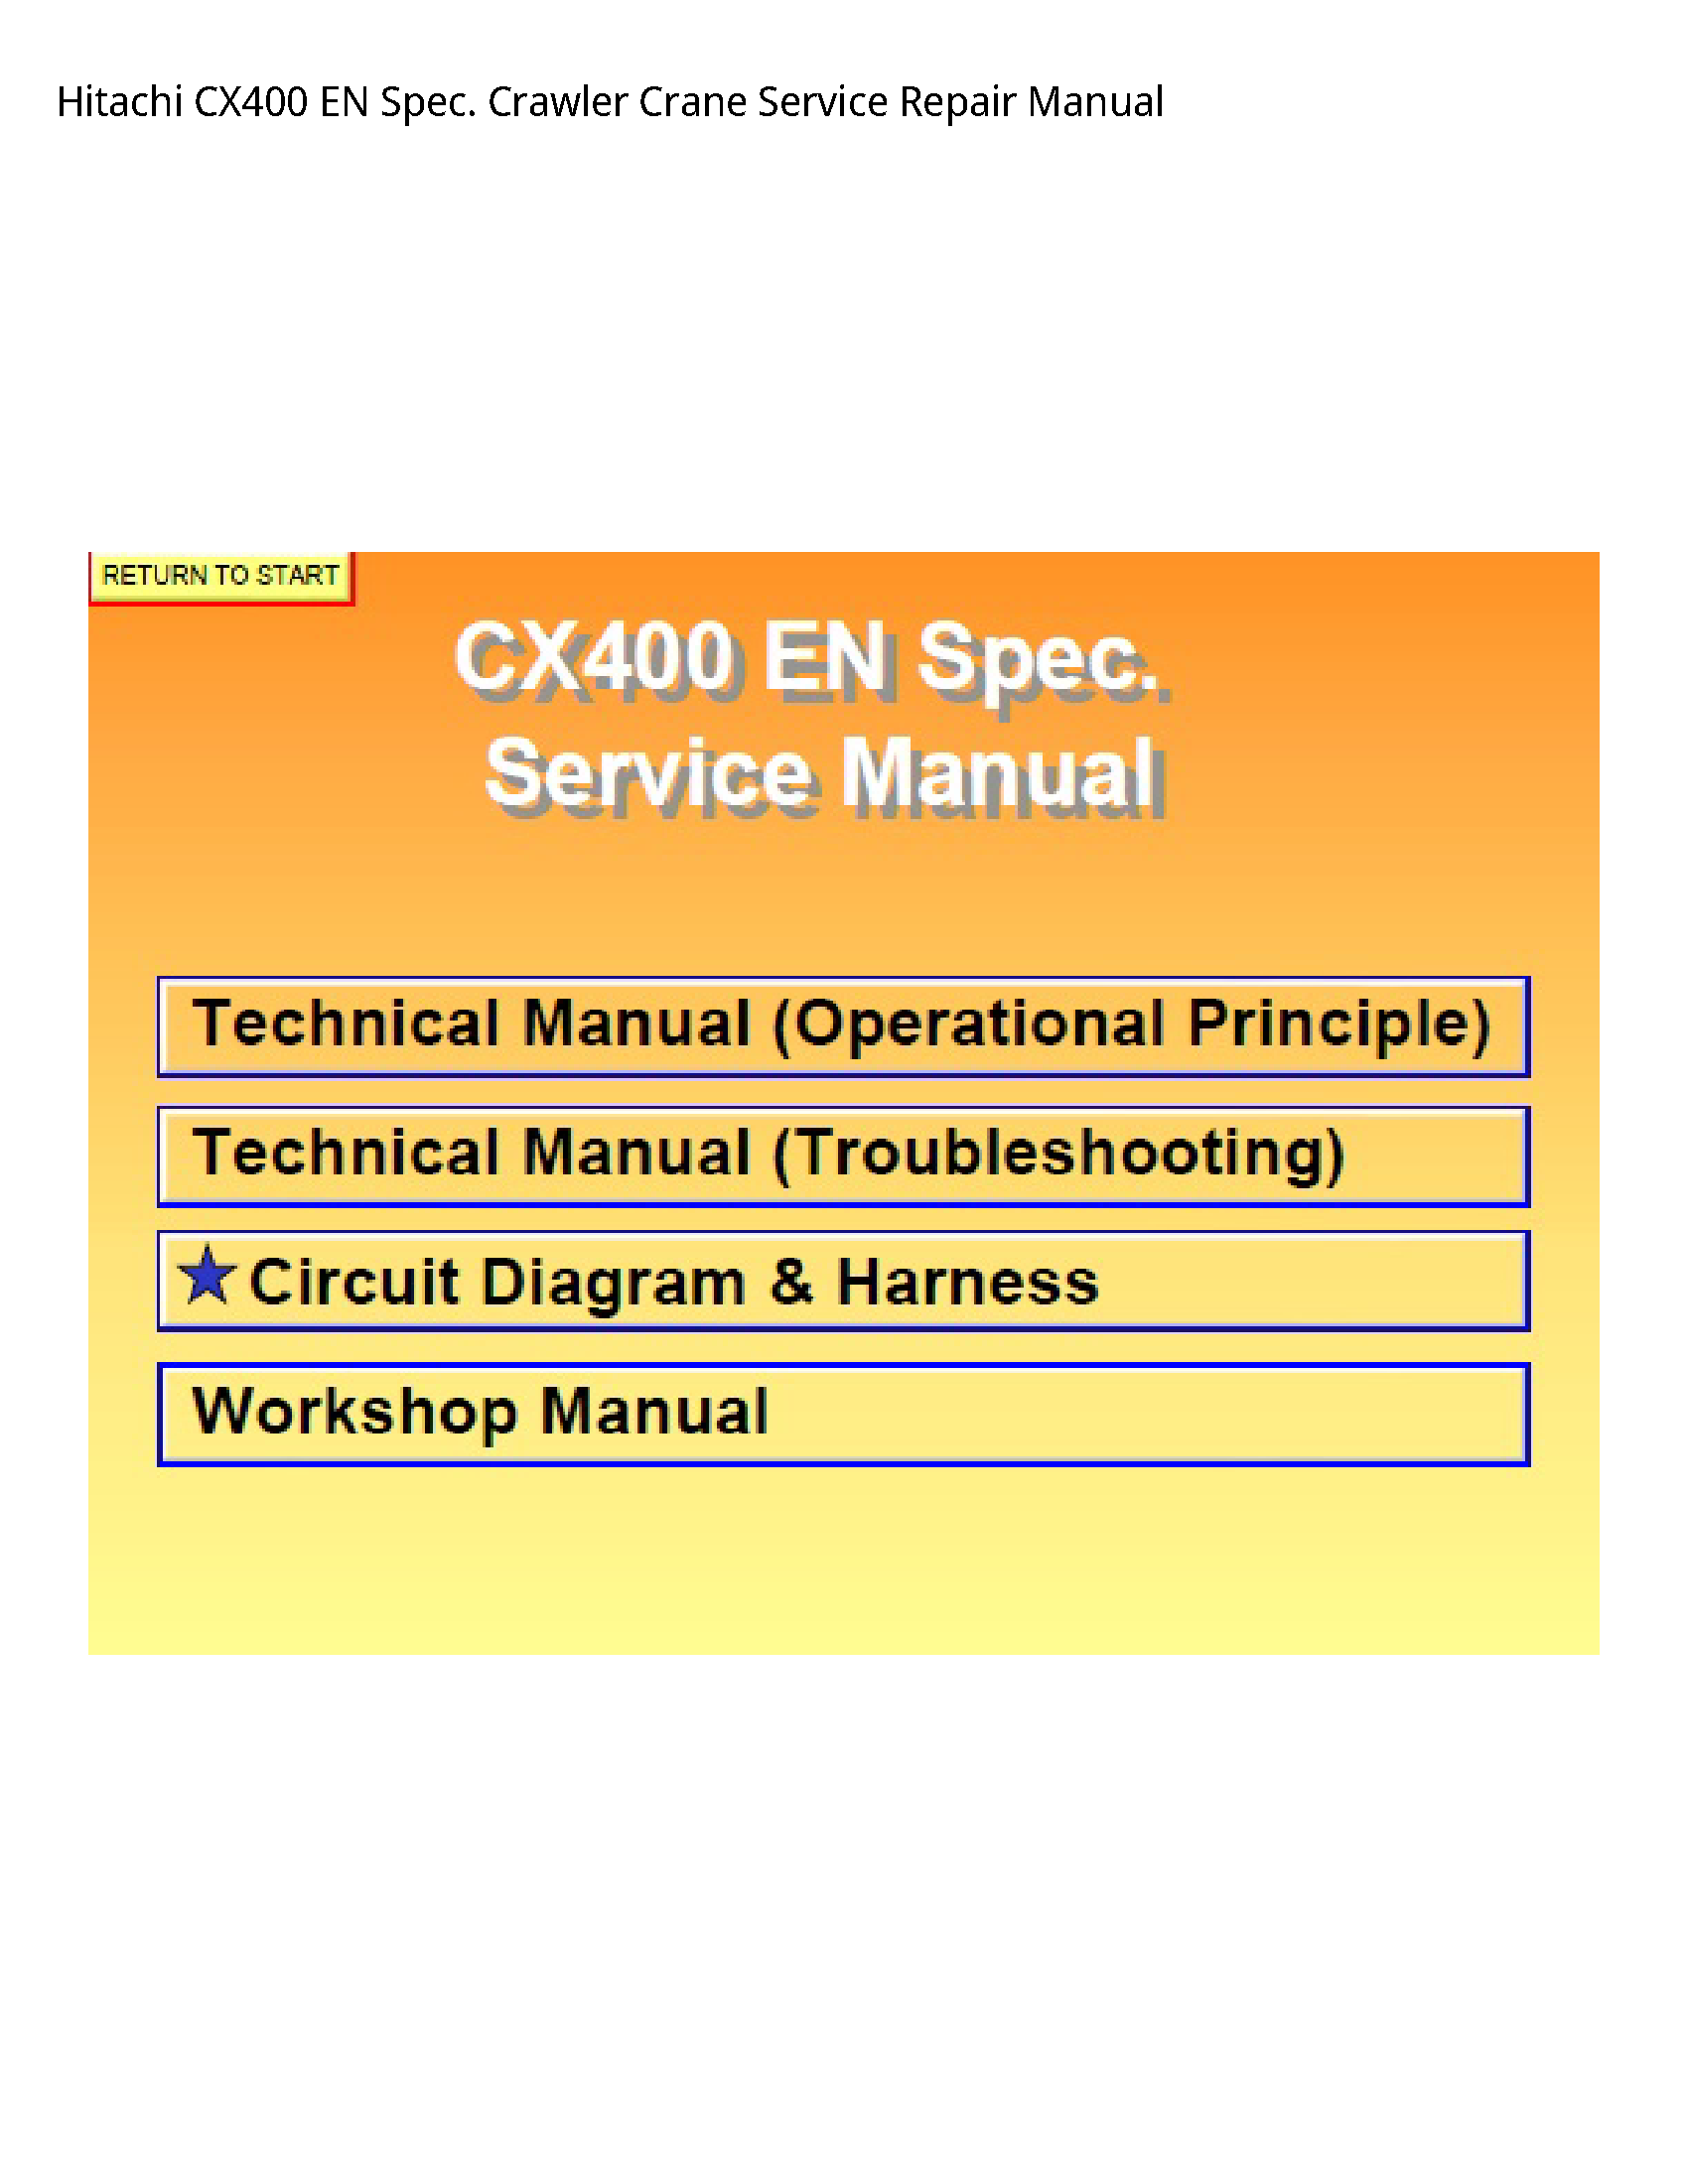 Hitachi CX400 EN Spec. Crawler Crane manual